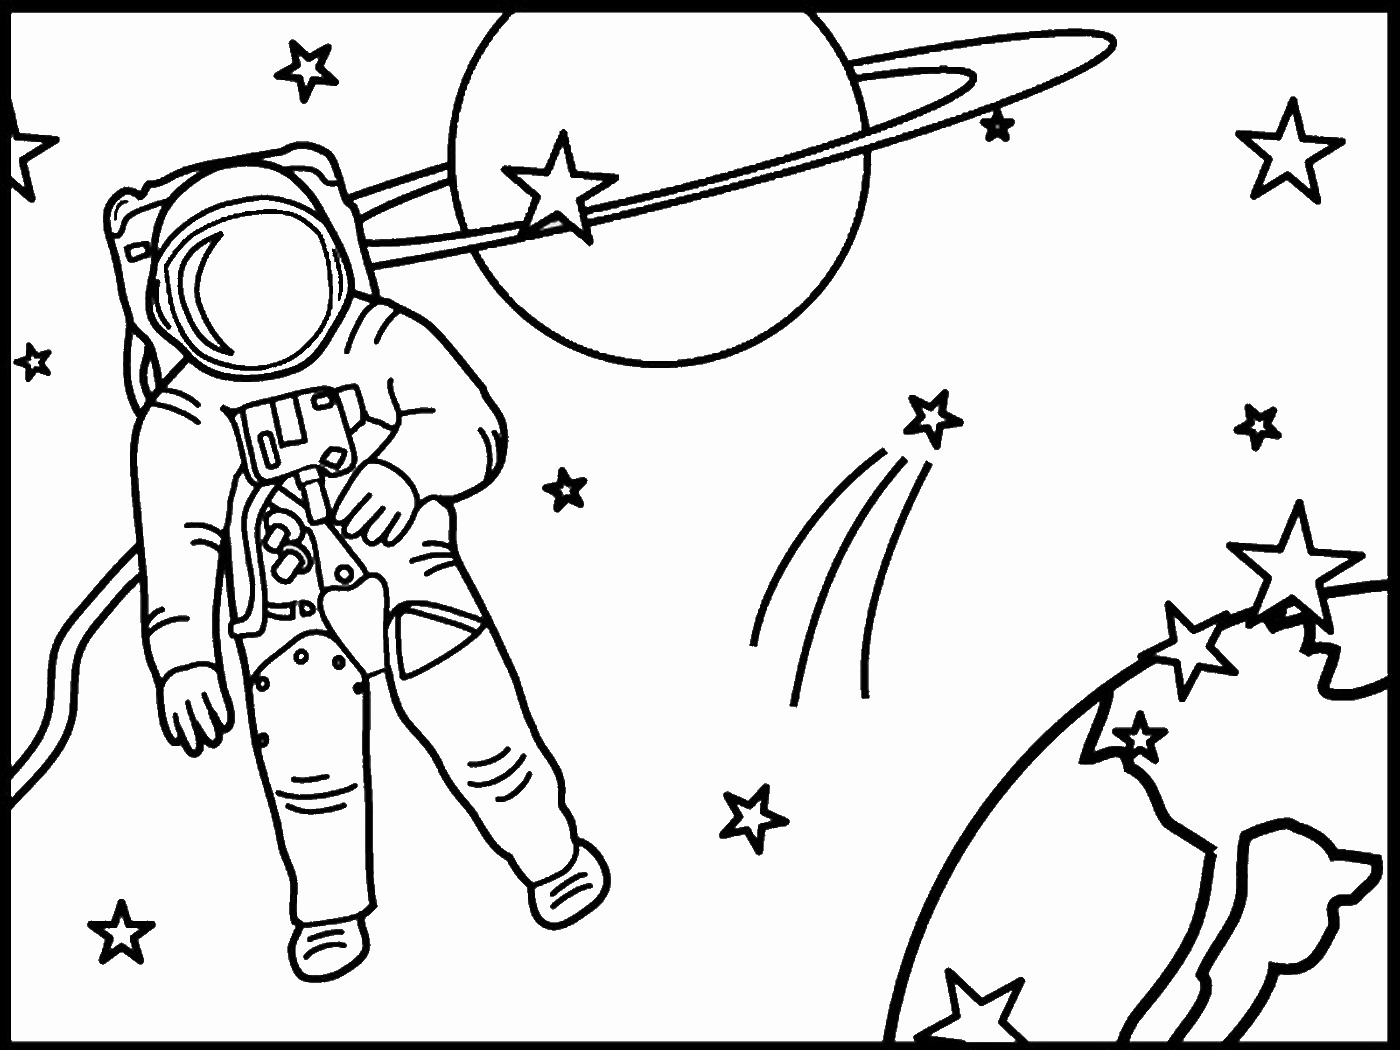 Раскраски 12 апреля день космонавтики для детей. Раскраска. В космосе. Космос раскраска для детей. Космические раскраски для детей. Раскраска про космос и Космонавтов для детей.